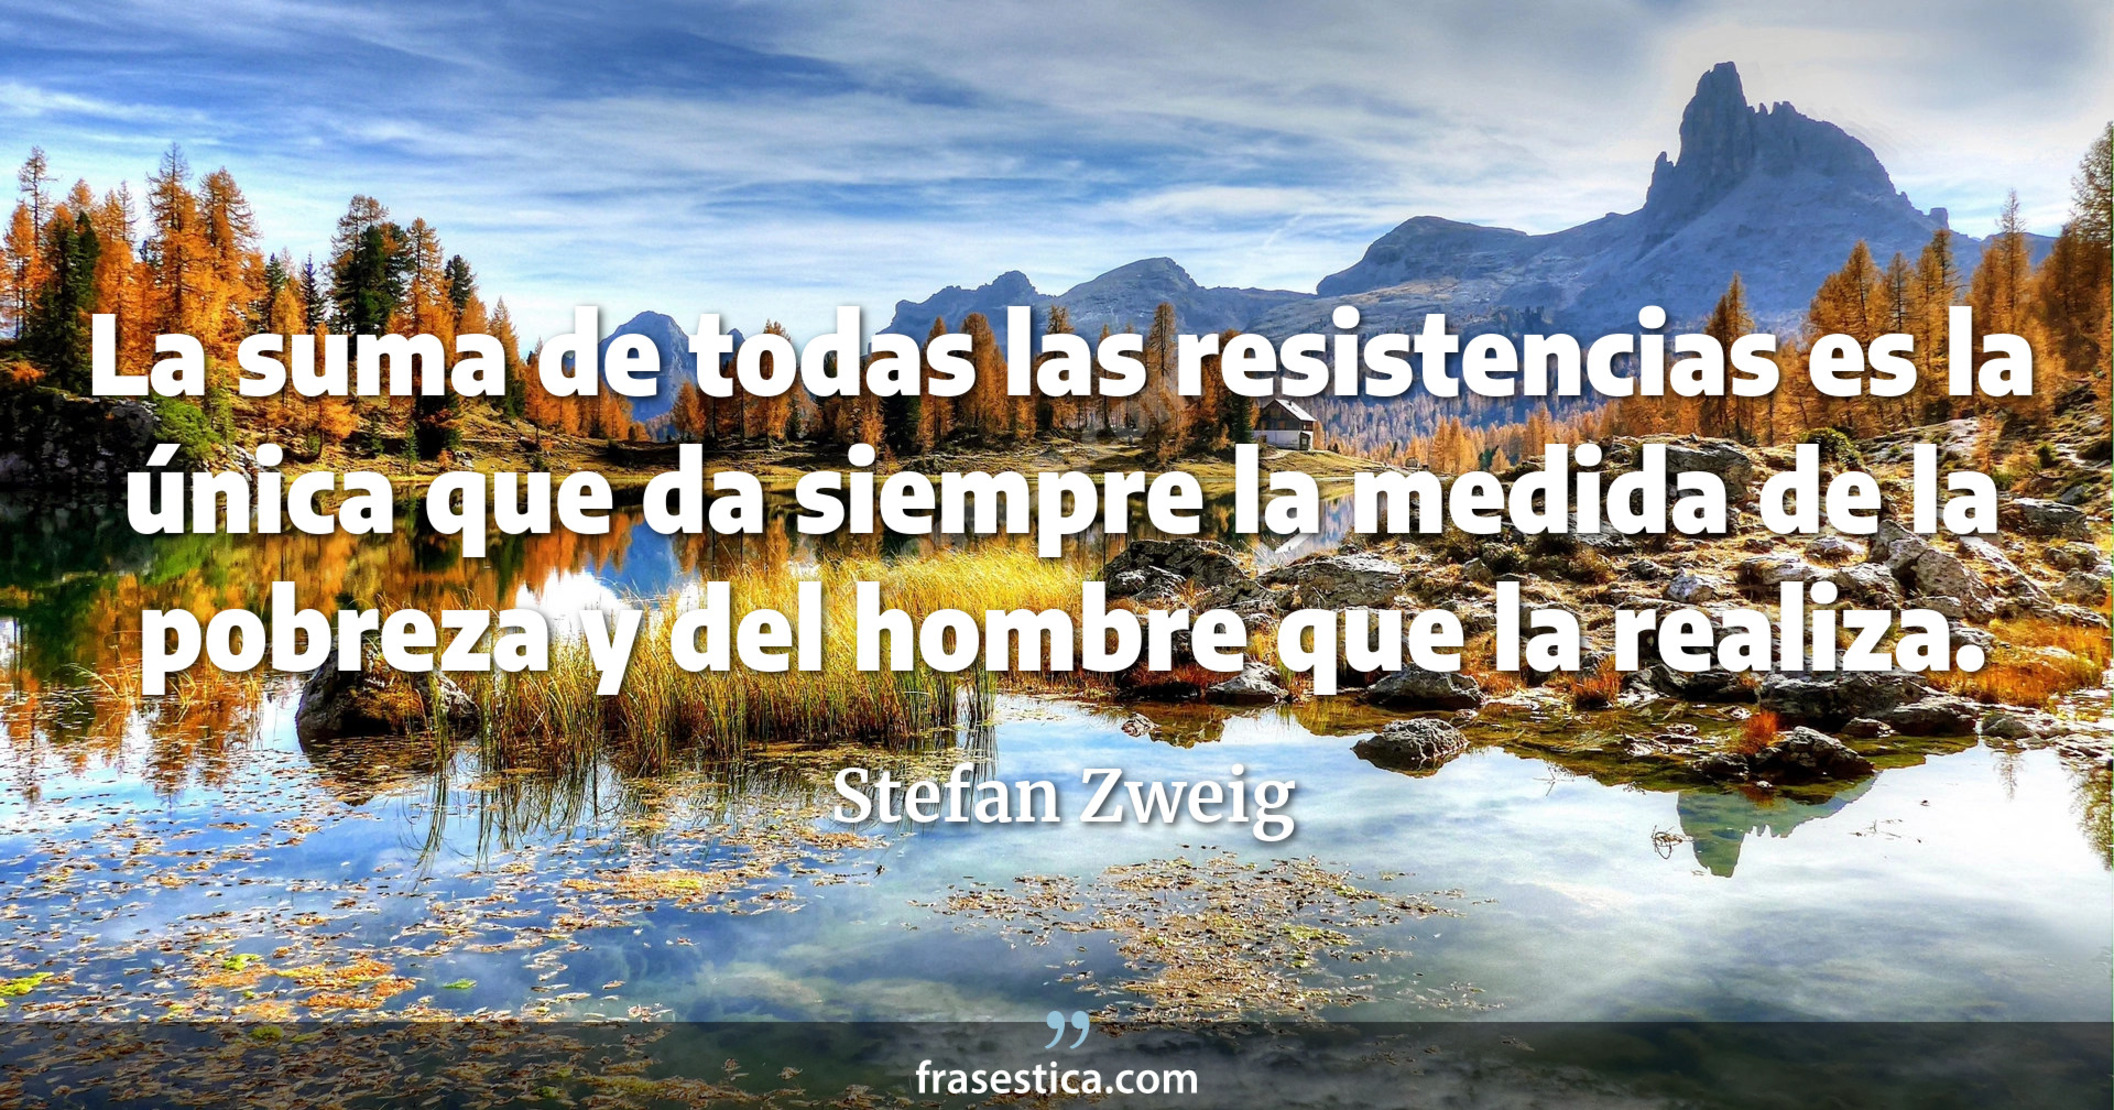 La suma de todas las resistencias es la única que da siempre la medida de la pobreza y del hombre que la realiza. - Stefan Zweig